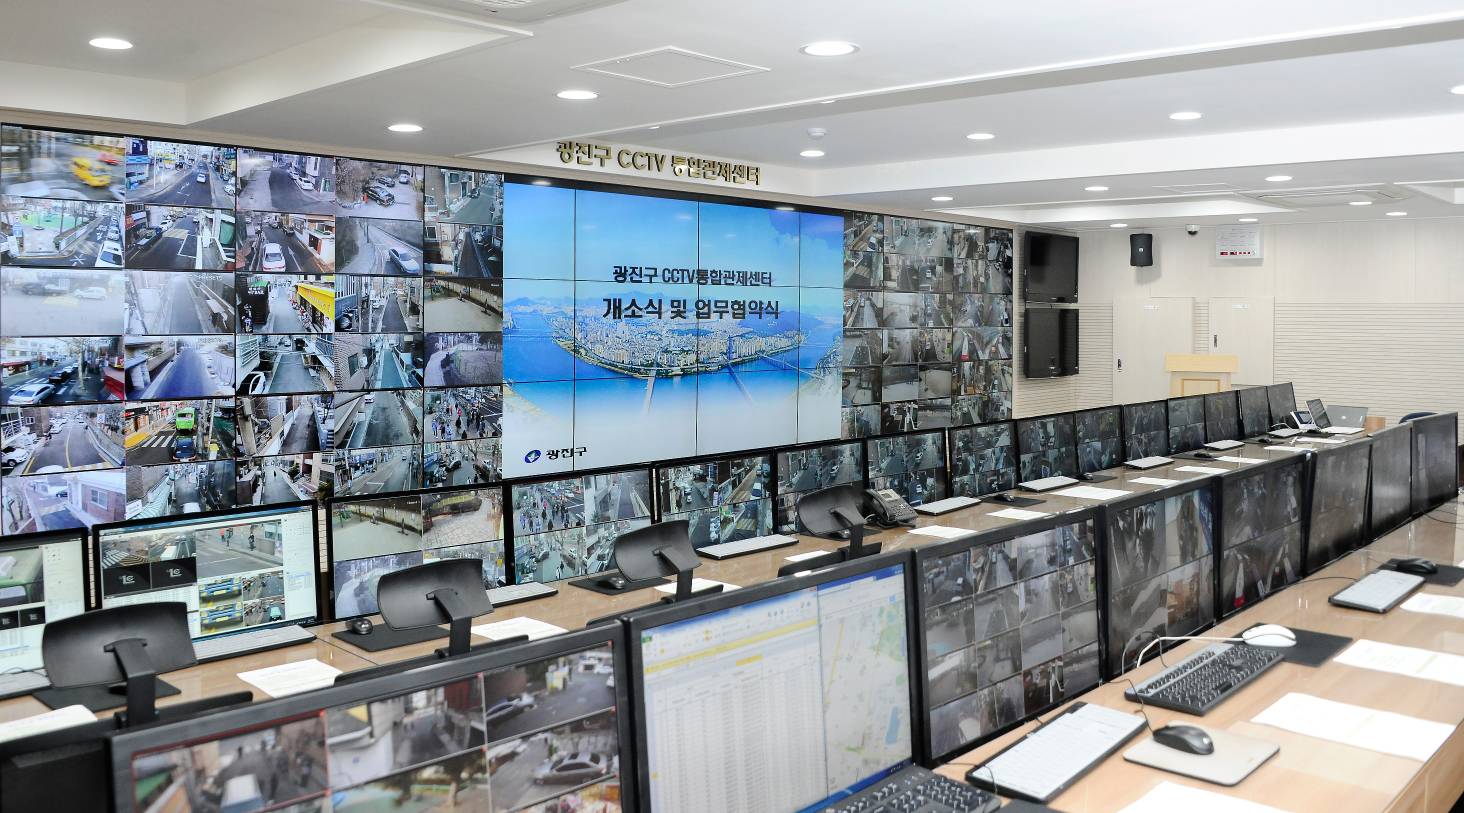 20170119-광진구 CCTV통합관제센터 개소식